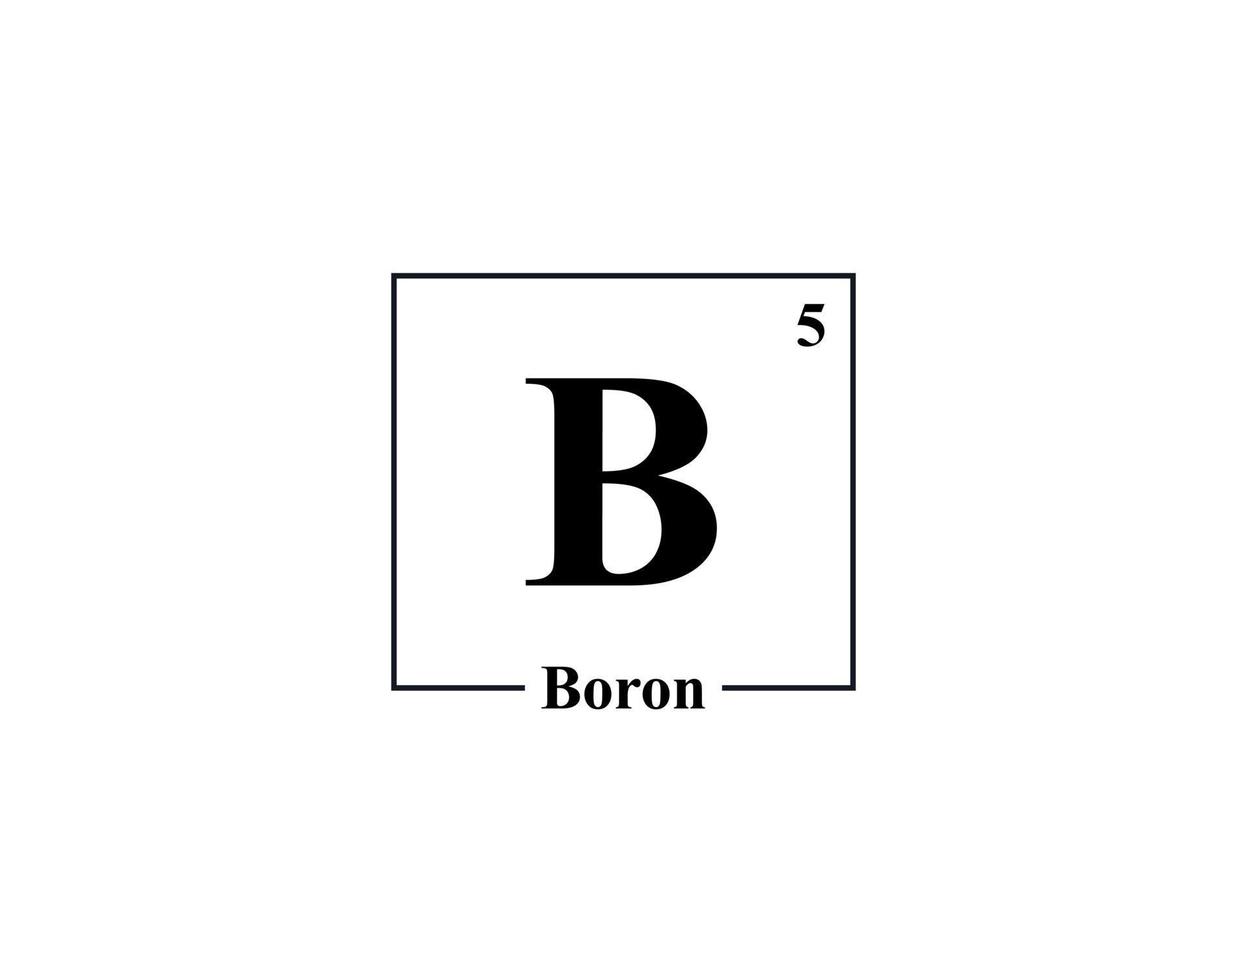 Boron icon vector. 5 B Boron vector